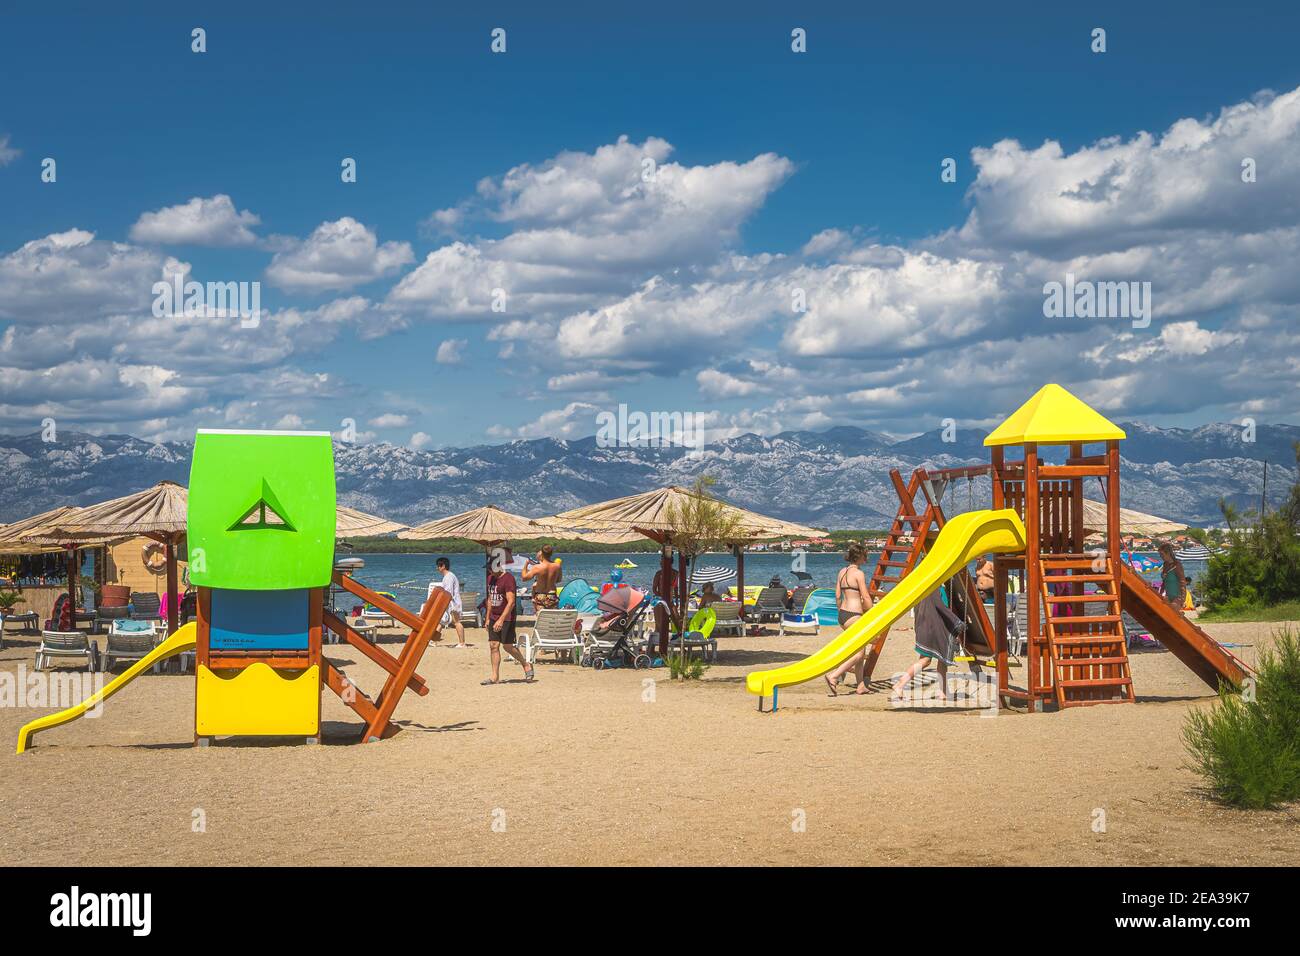 Nin, Kroatien, Juli 2019 Kinderspielplatz am Strand Zdrijac zwischen der  Bucht von Nin und der Adria mit den Dinarischen Alpen im Hintergrund  Stockfotografie - Alamy